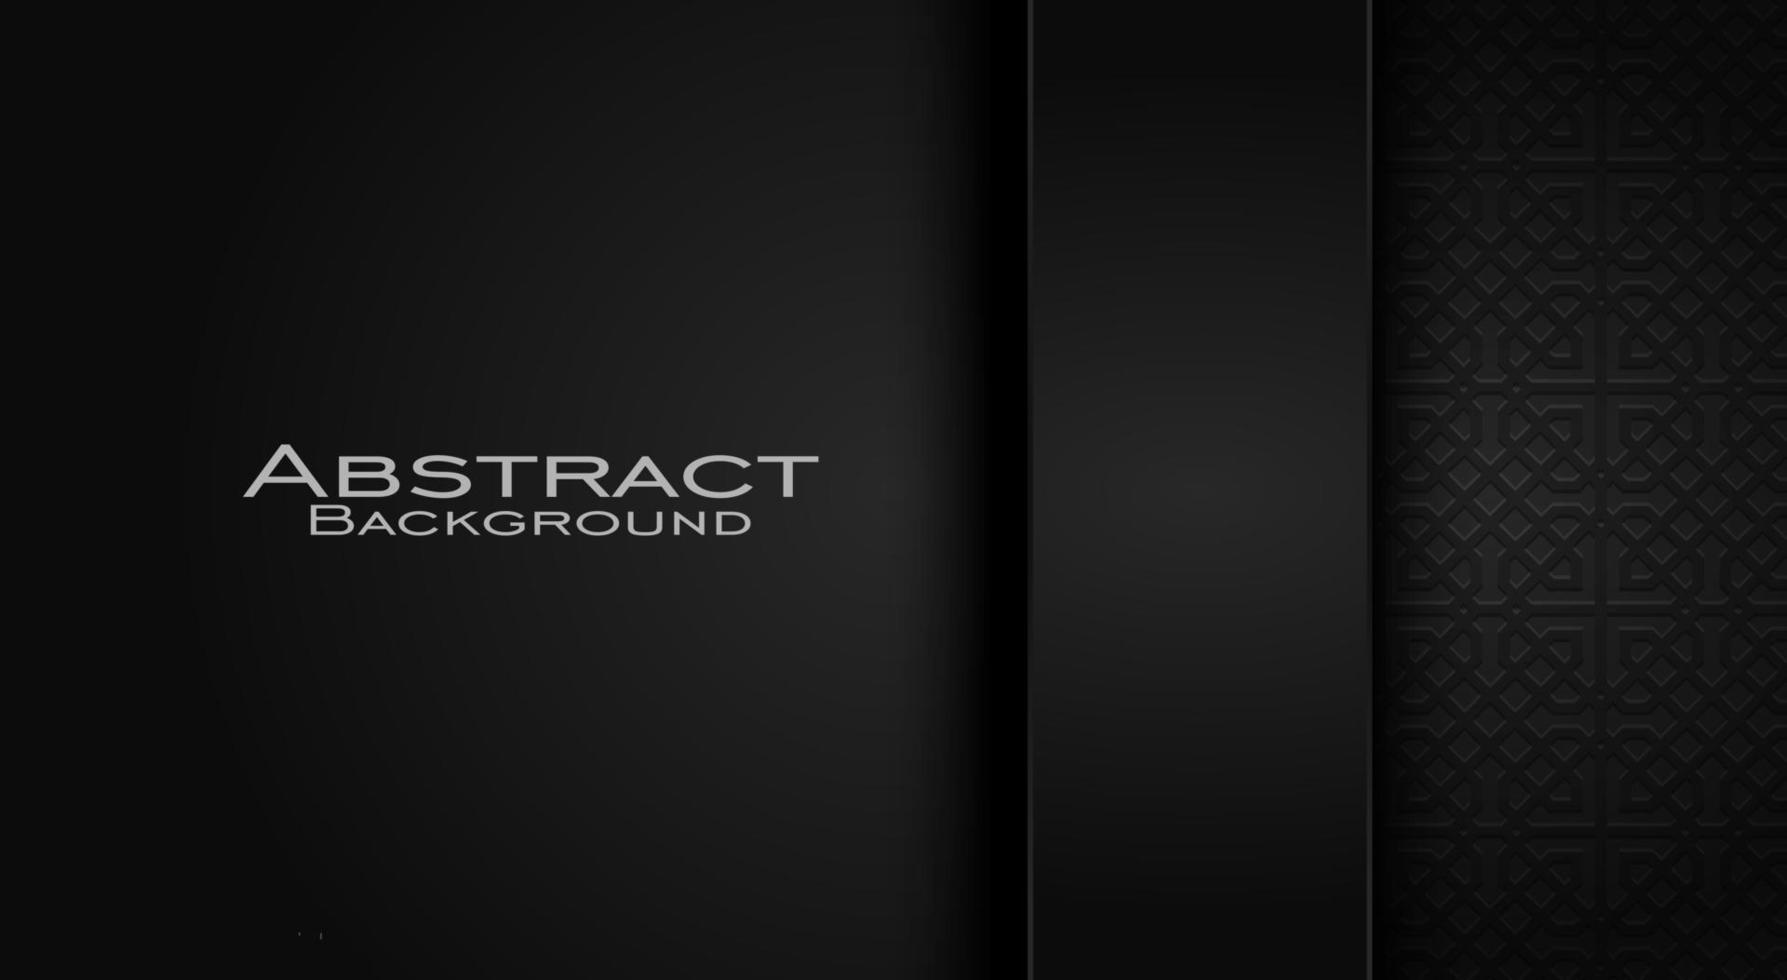 fundo abstrato simples, design moderno e elegante, com cor preta escura, vetor